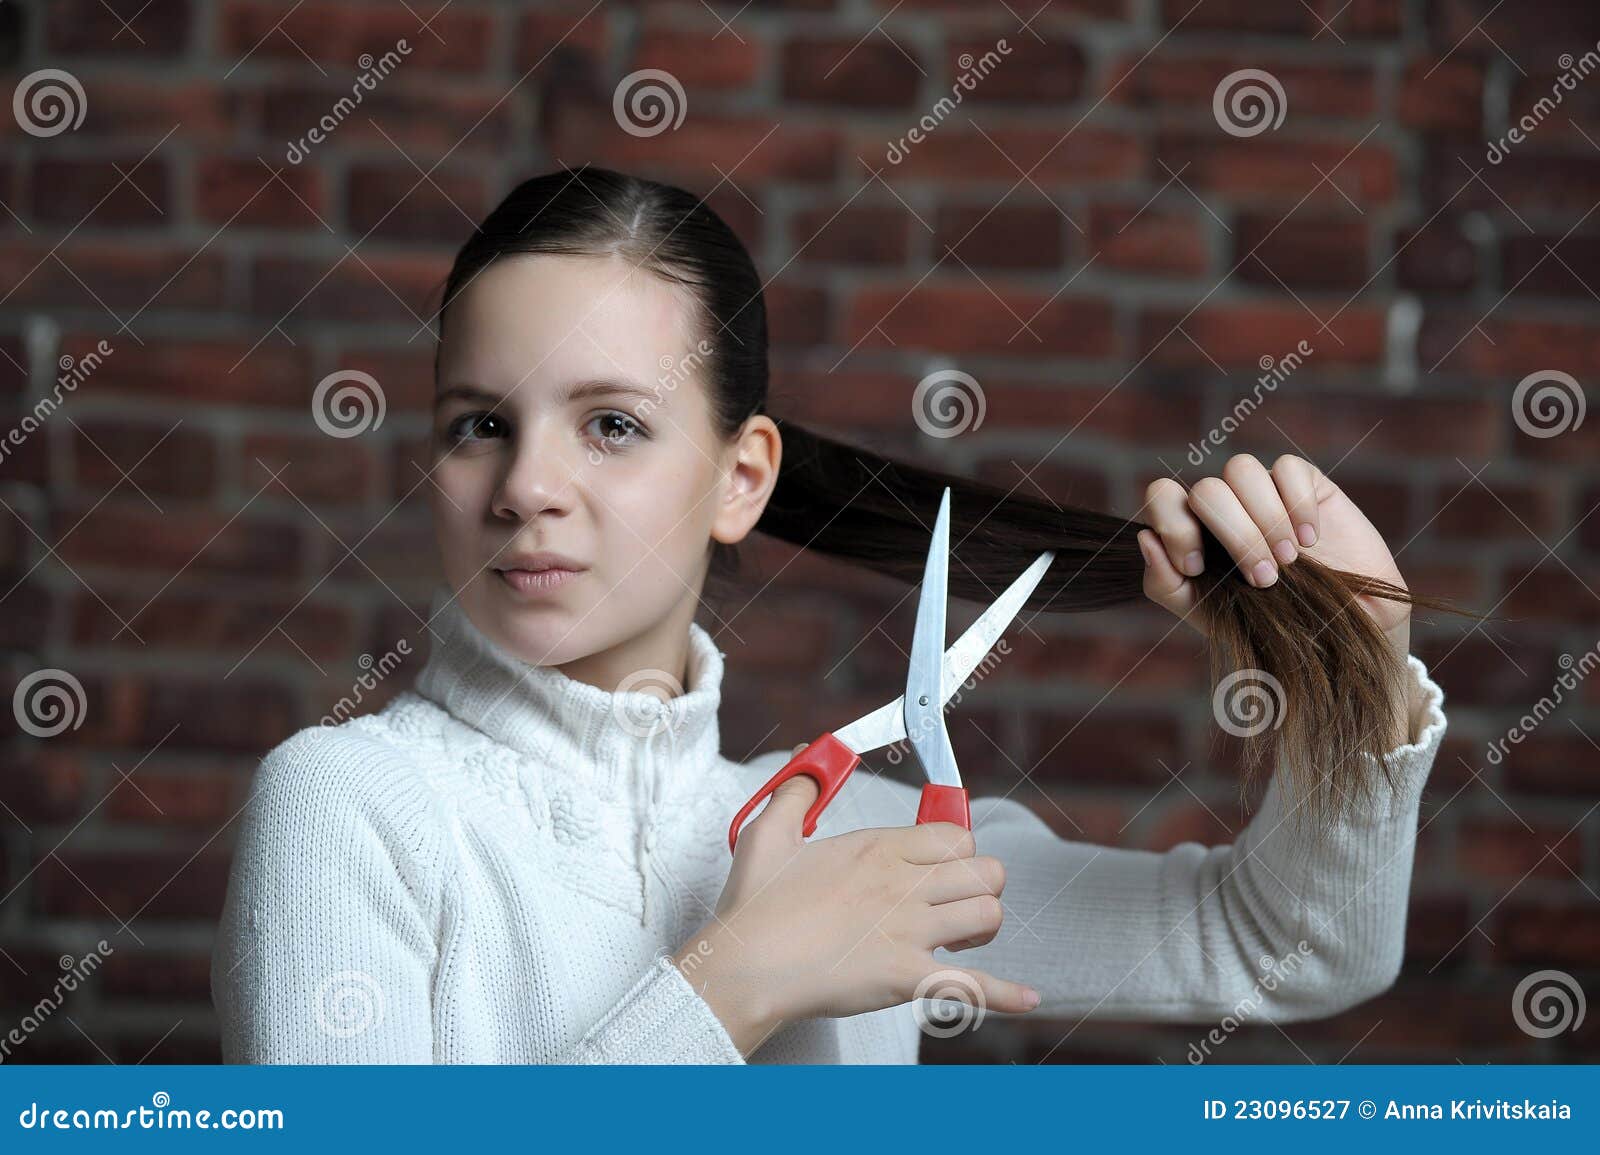 Teen Scissors 46